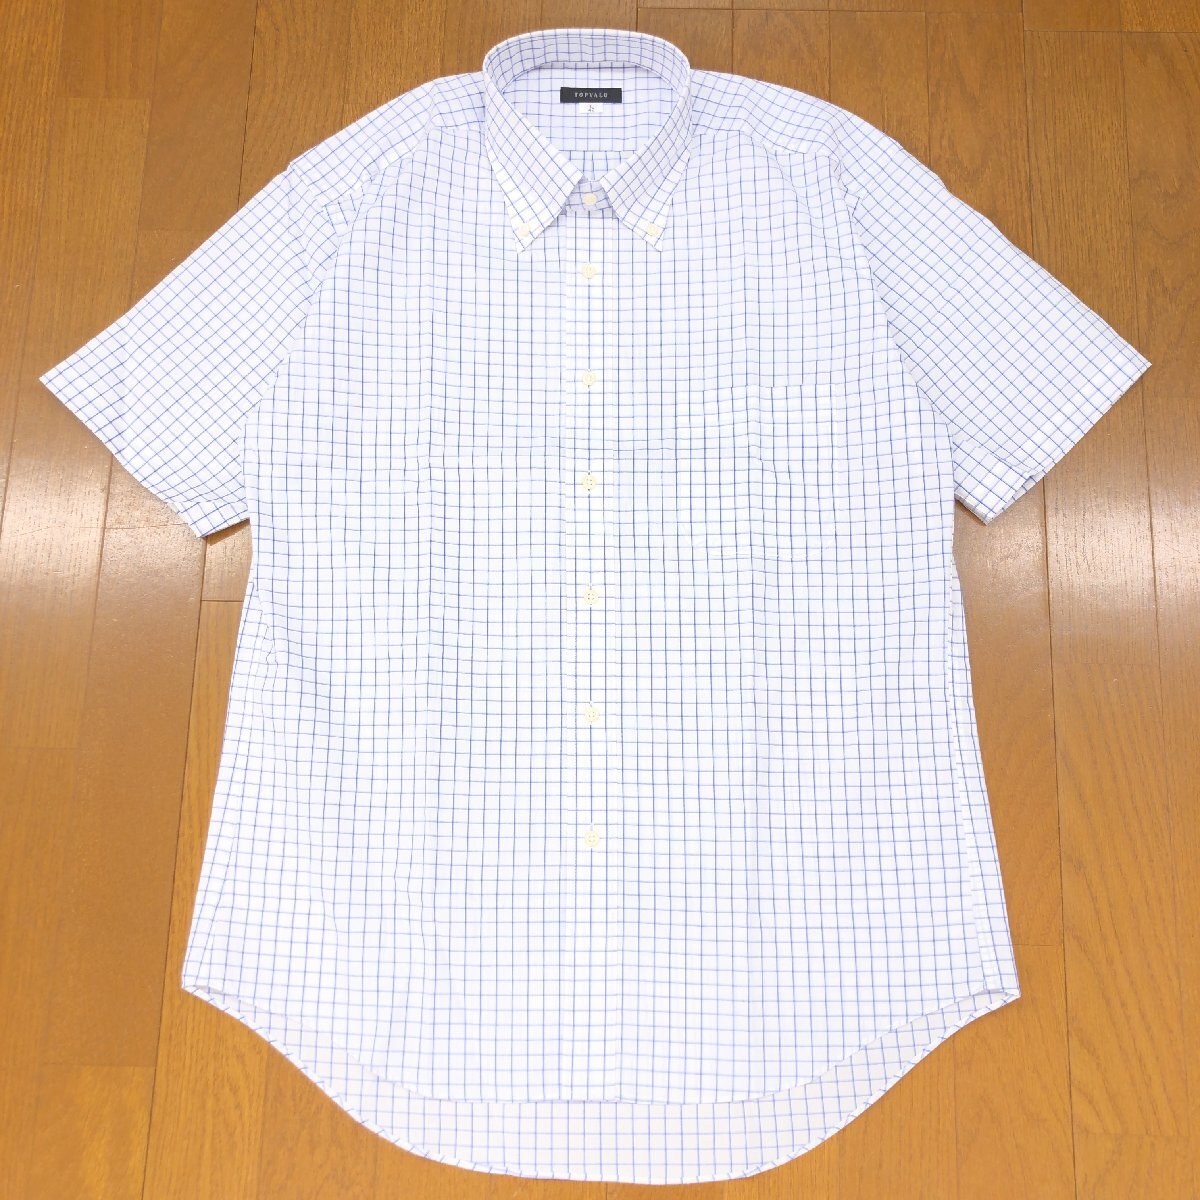 新品 TOPVALU トップバリュー 吸水速乾 ドライ B.D. チェック ワイシャツ 42(L) 白×紺 ホワイト ネイビー 半袖 カッターシャツ 未使用の画像1